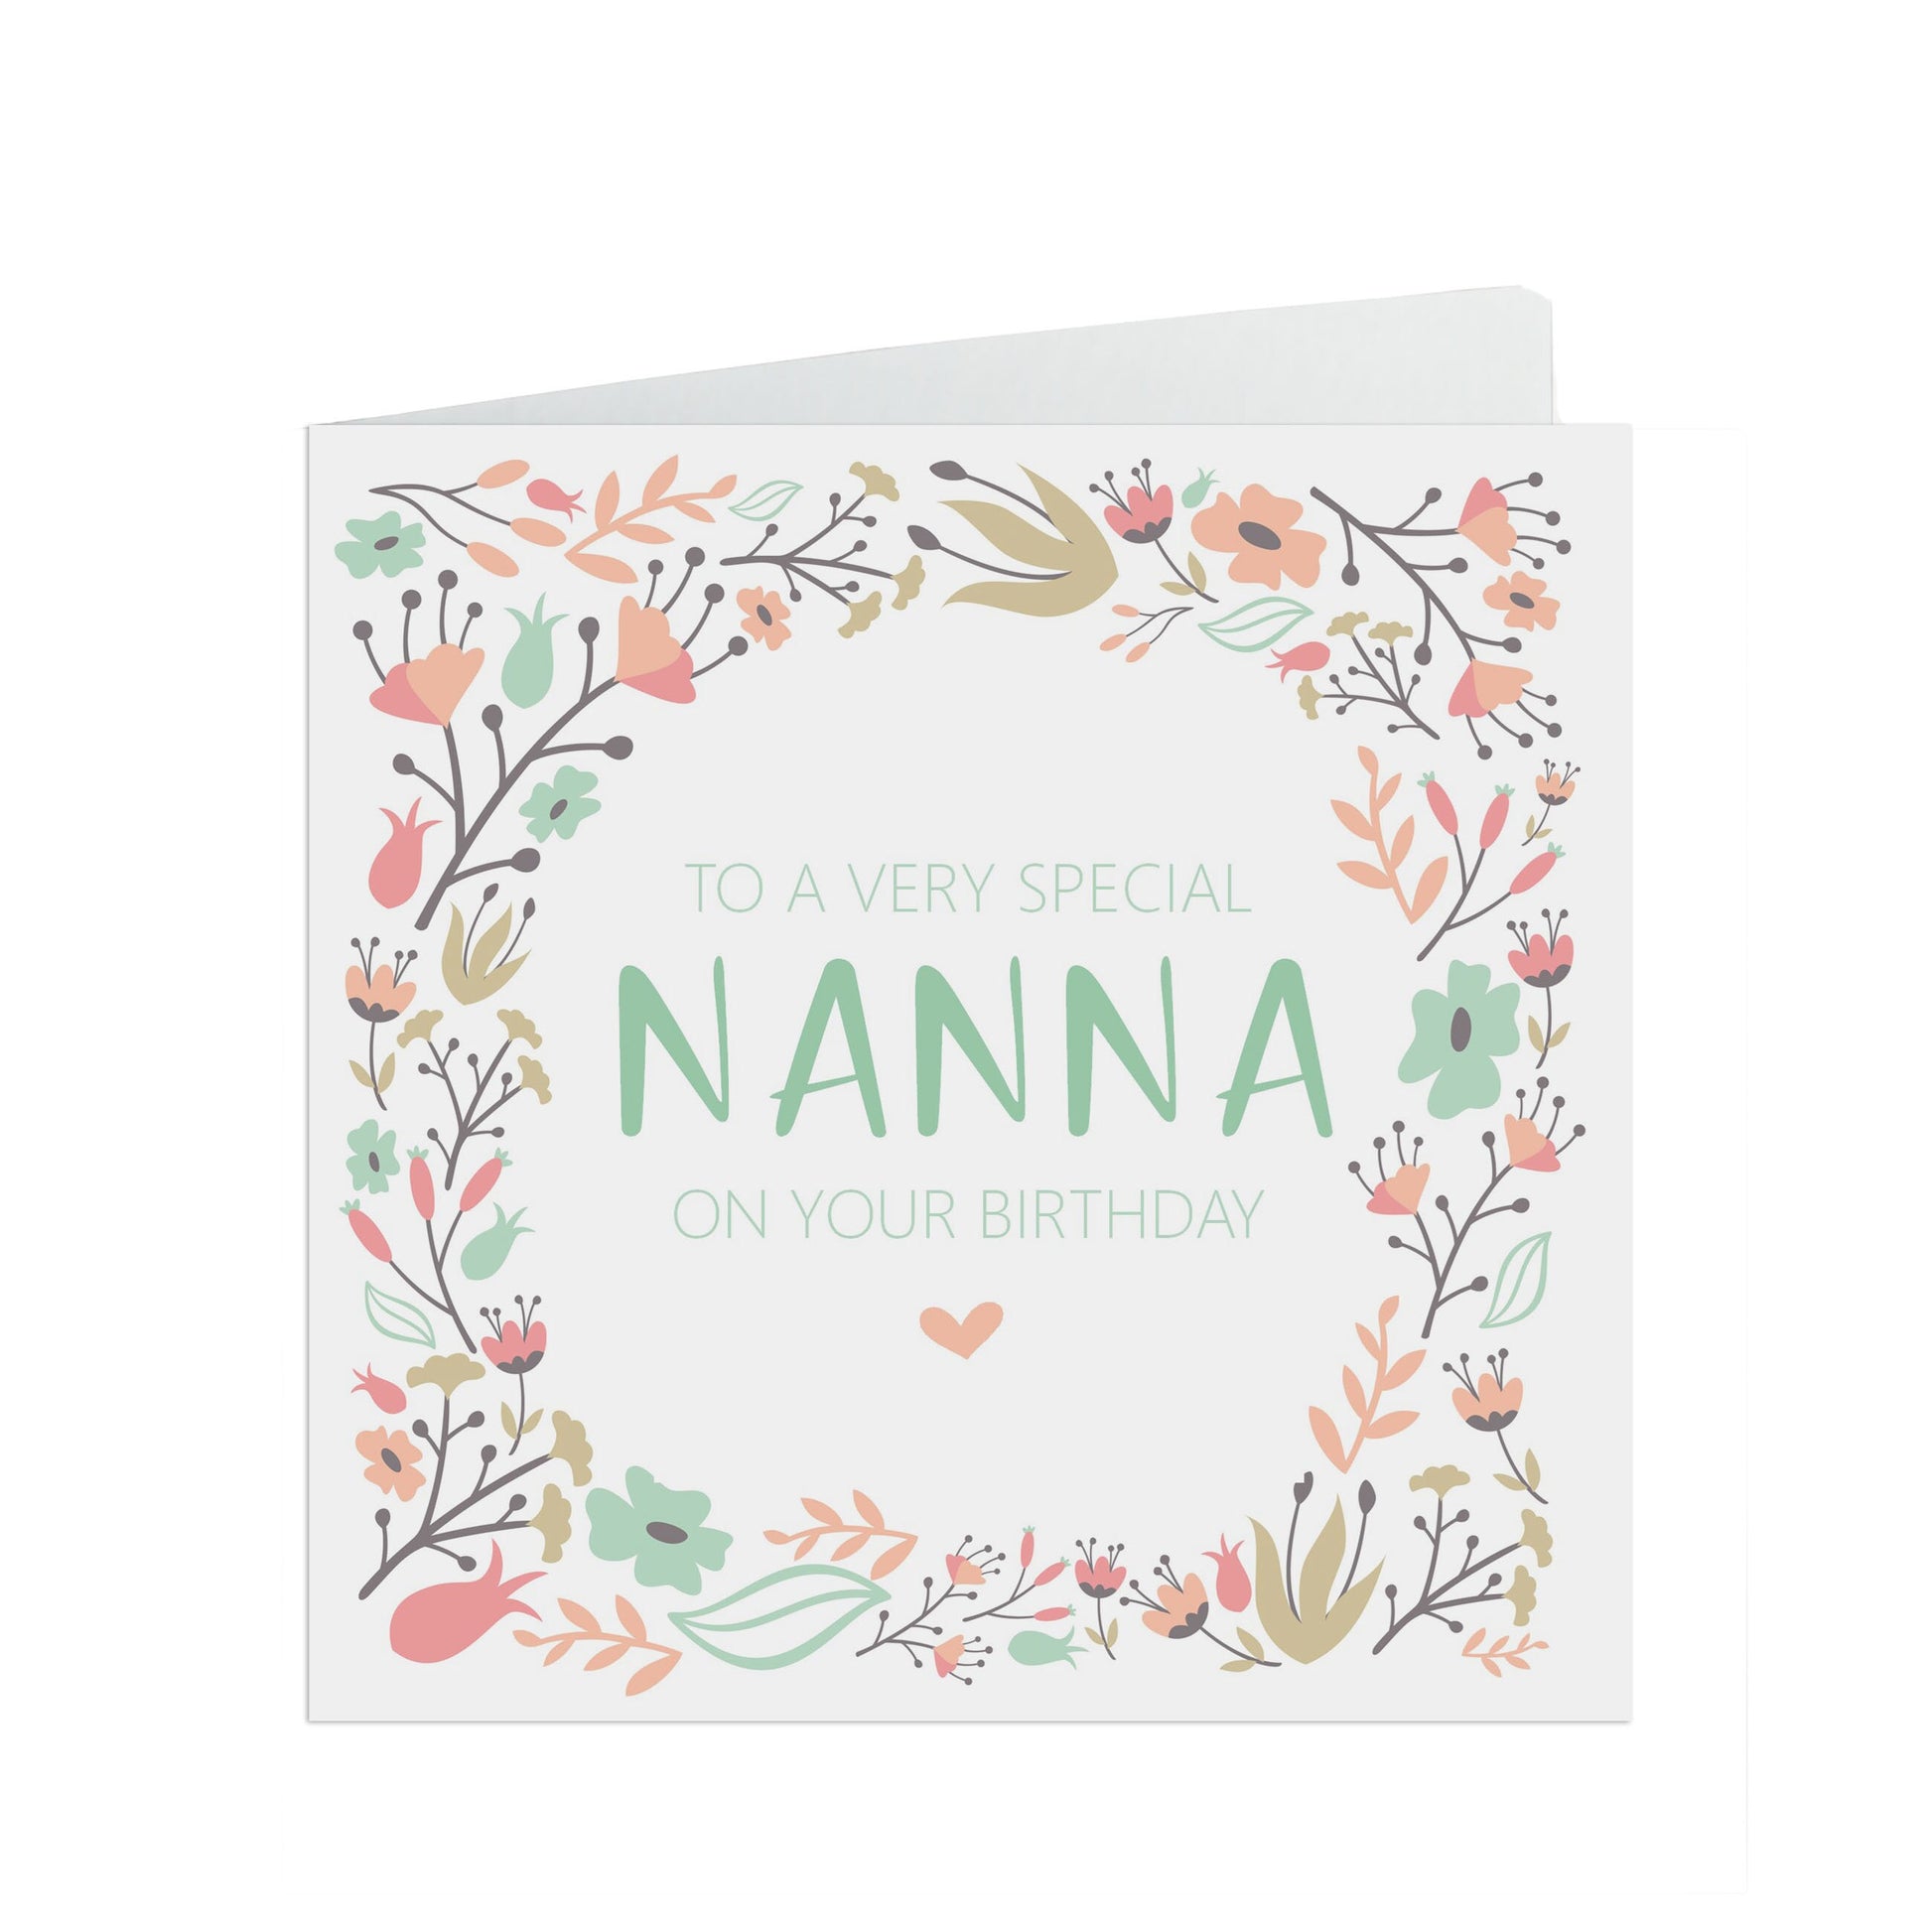 Nanna Birthday Card, Sage & Peach Flower Design